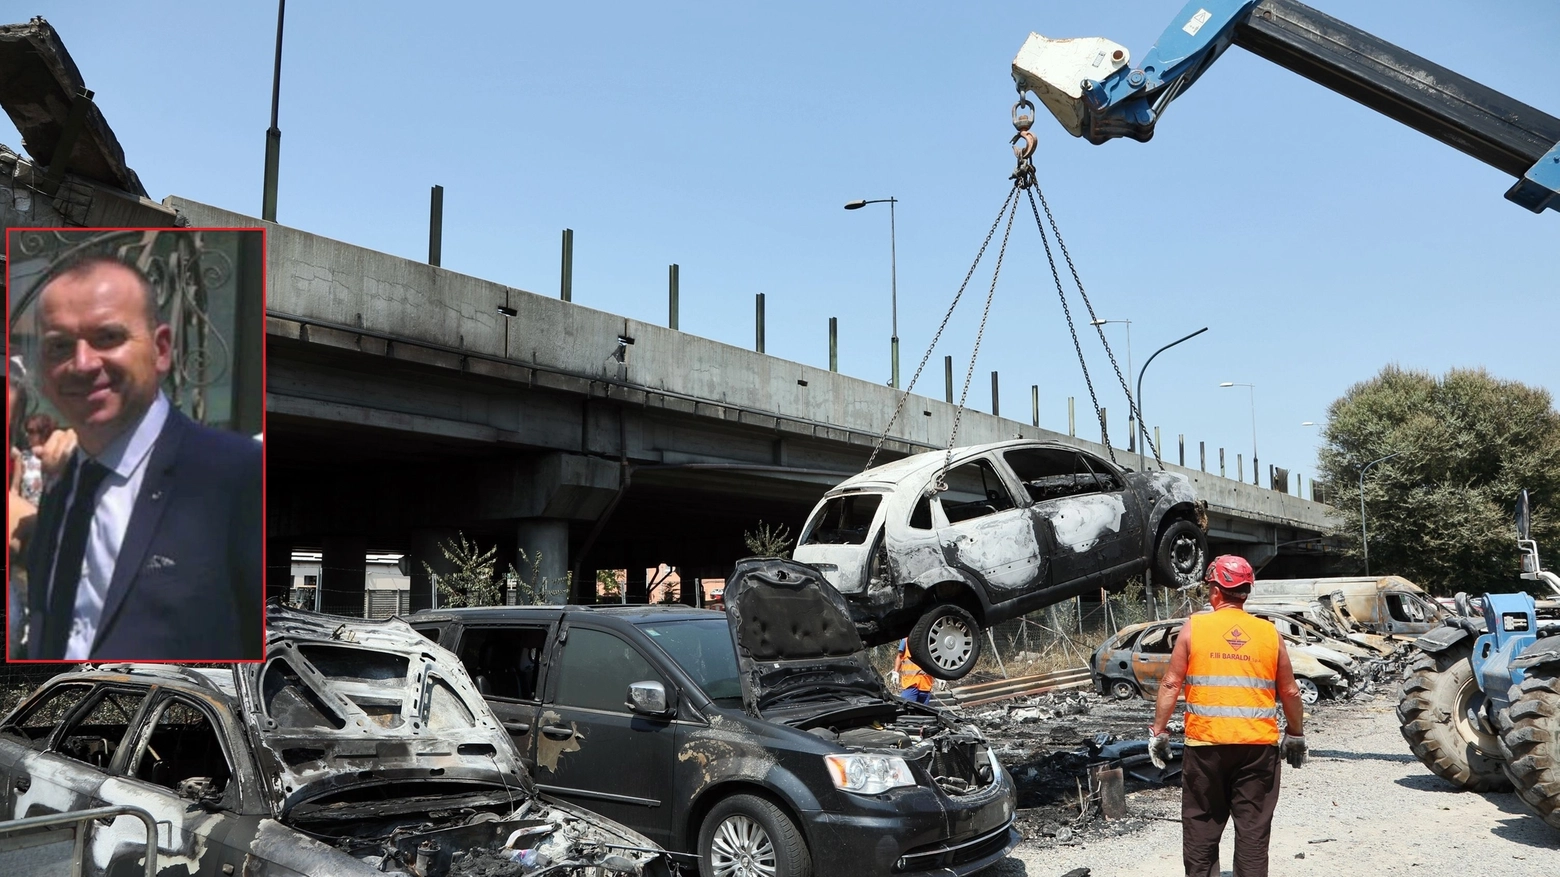 Le carcasse delle auto distrutte dall'esplosione e nel riquadro Andrea Anzolin